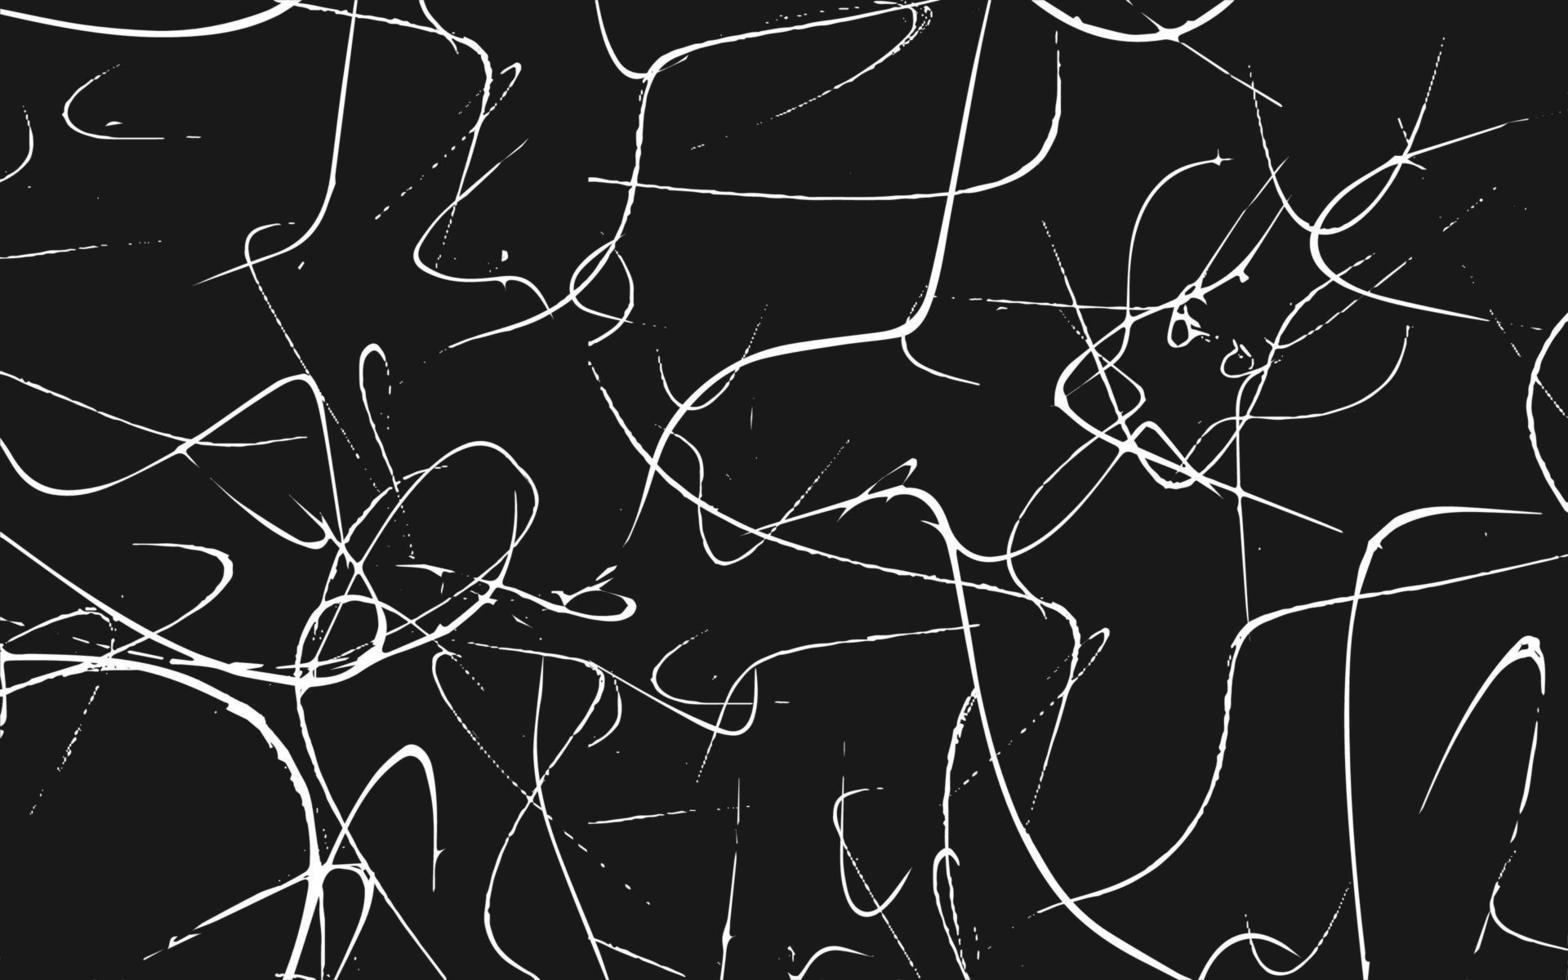 fundo urbano grunge riscado textura vetor sobreposição de poeira angústia granulado efeito sujo ilustração vetorial de pano de fundo aflito isolado branco no fundo preto